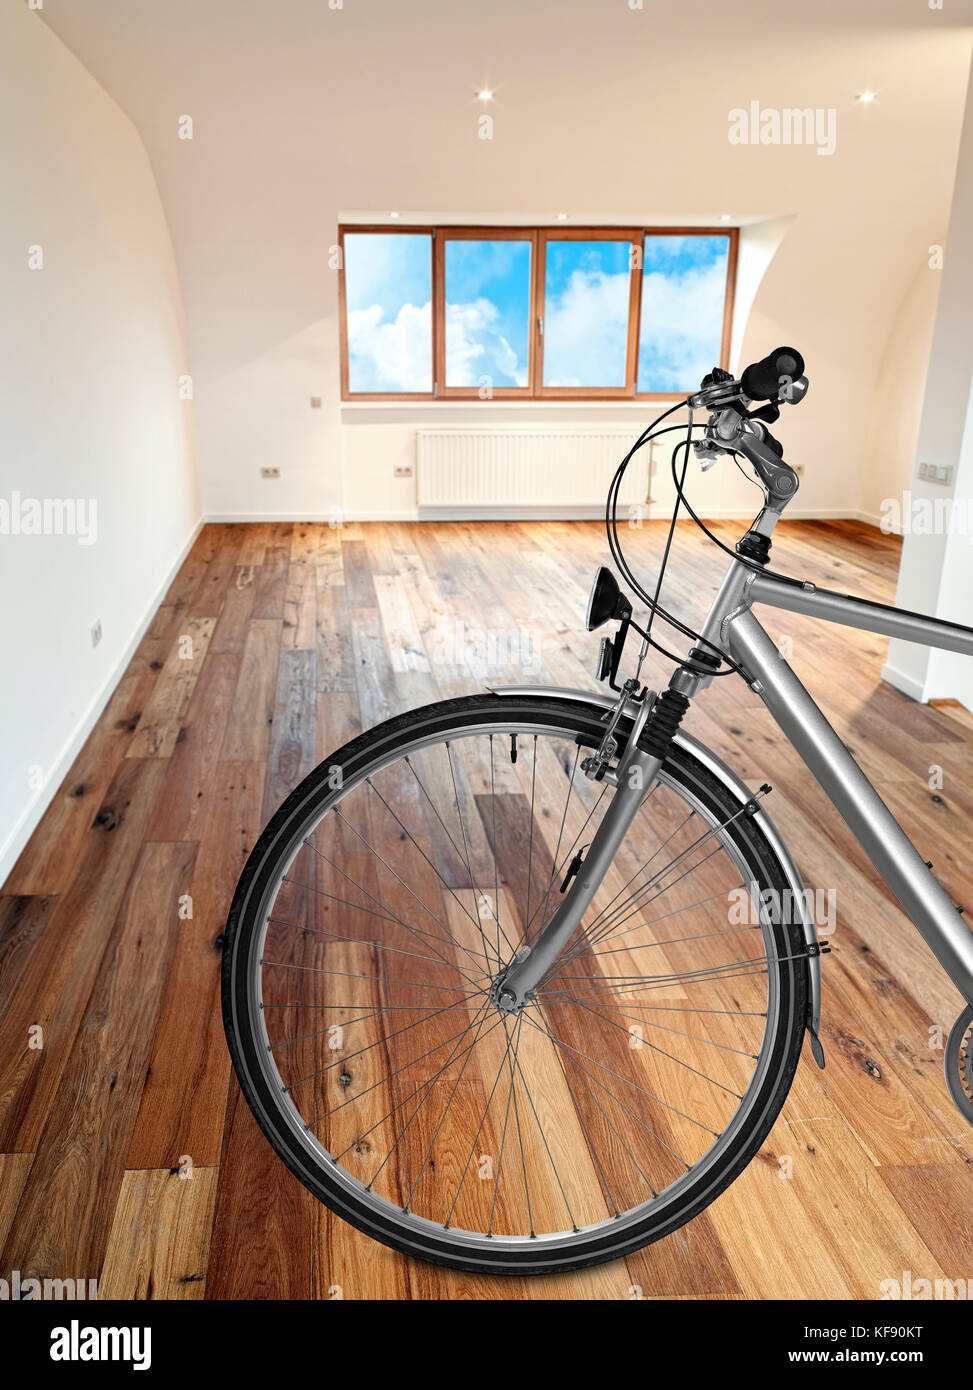 Moderne Einrichtung mit Holzfußboden und Fahrrad im Vordergrund. Stockfoto